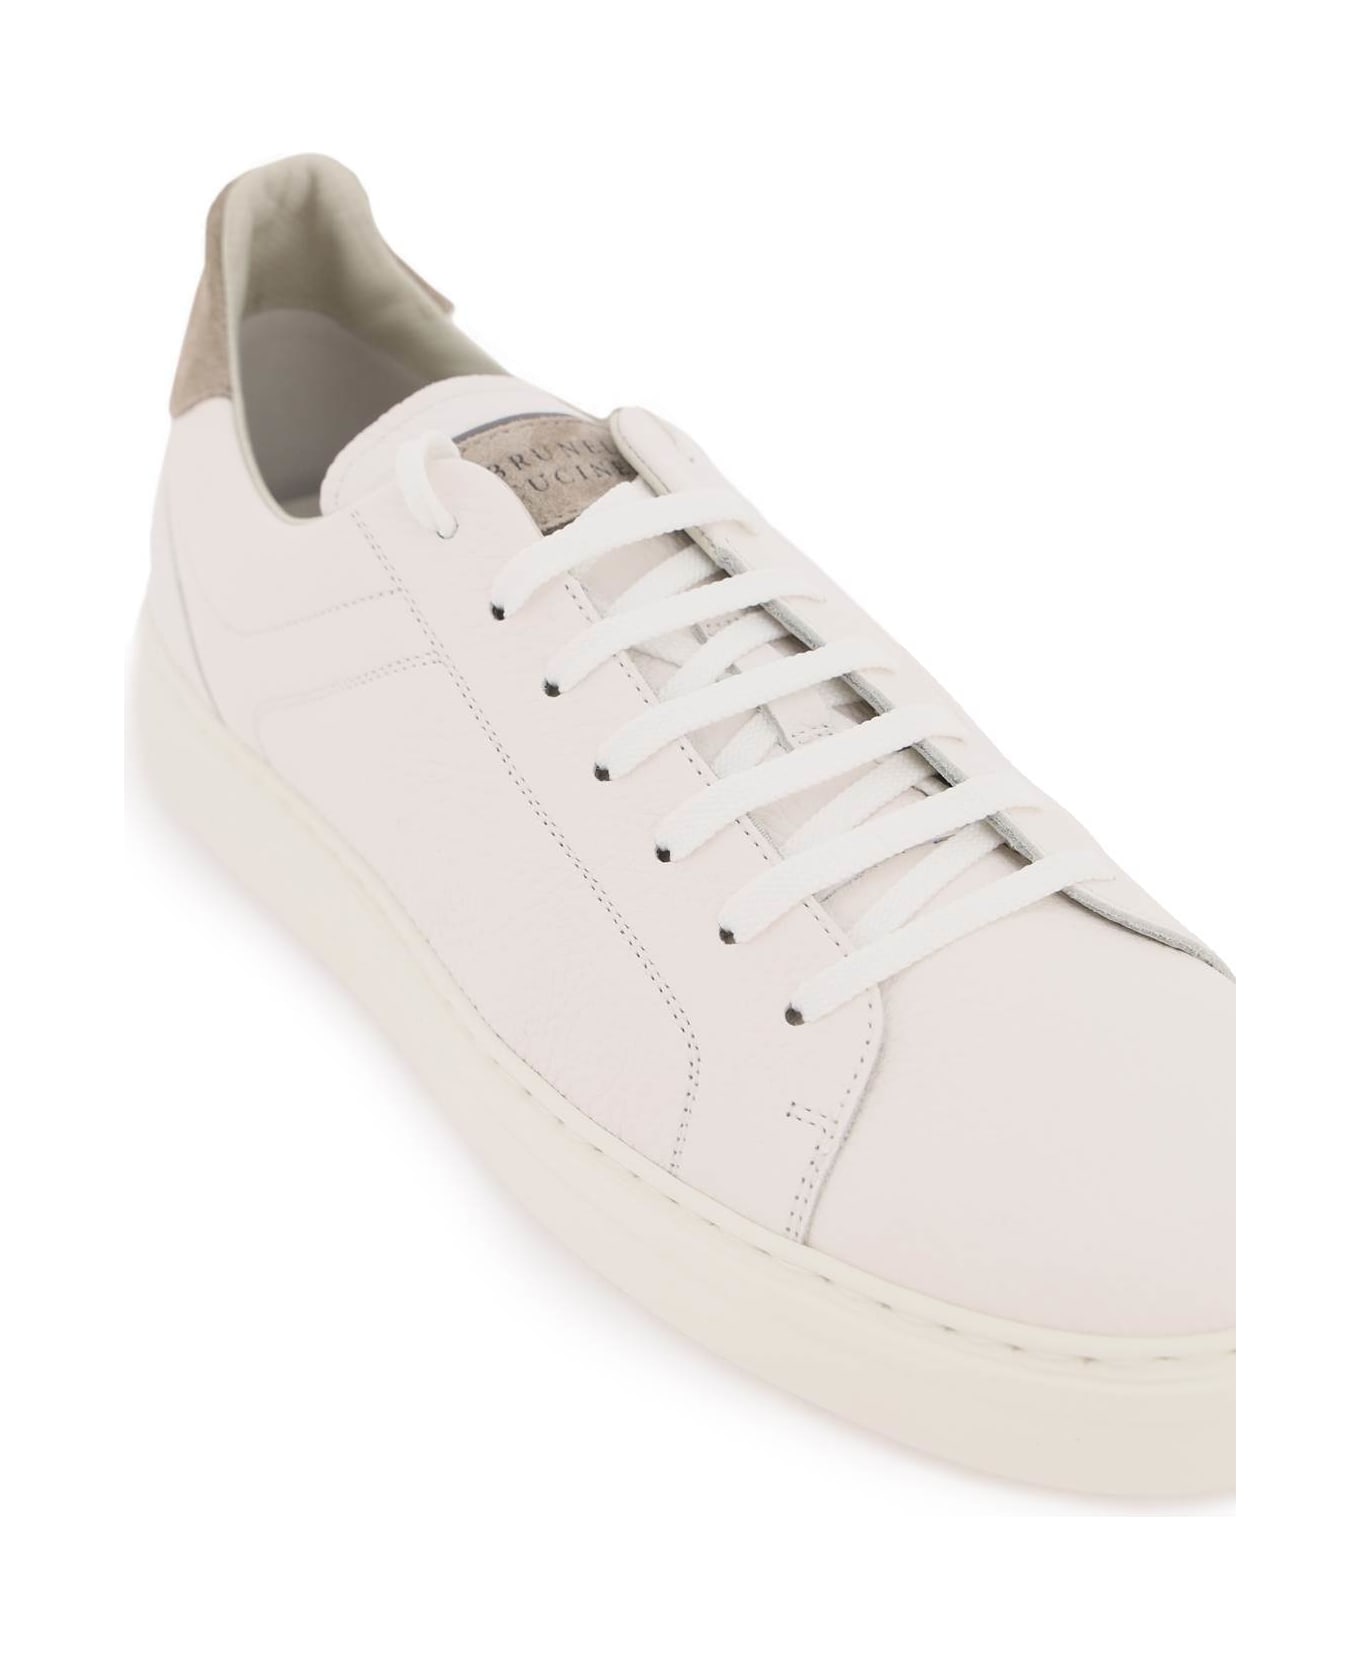 Brunello Cucinelli Sneakers - White